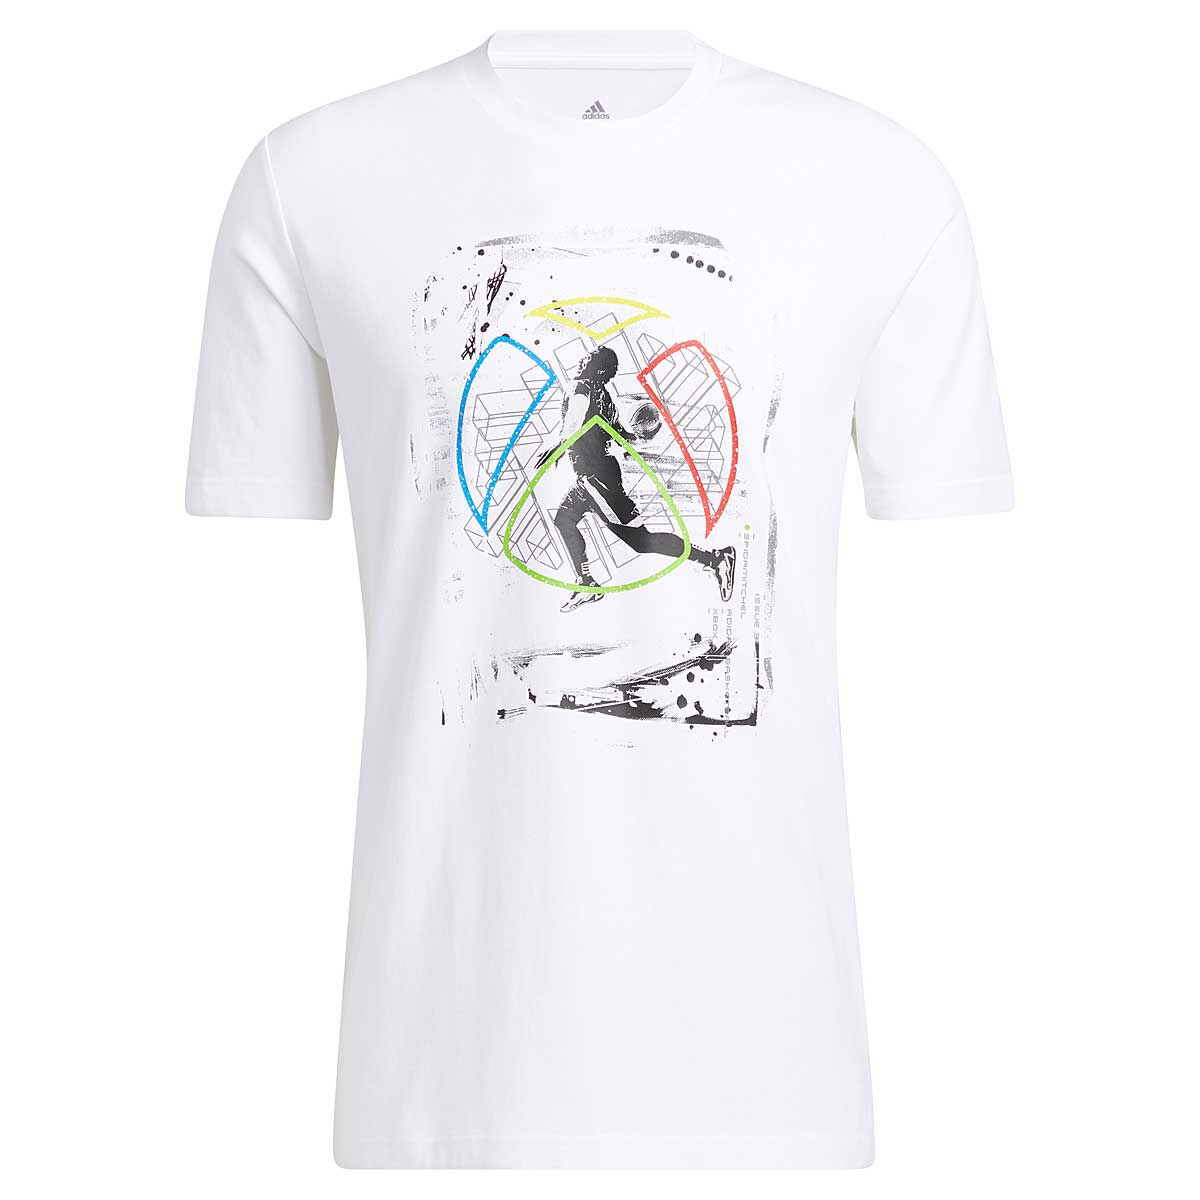 Vêtements Hommes | DON x XBOX SS T-shirt - GB55849